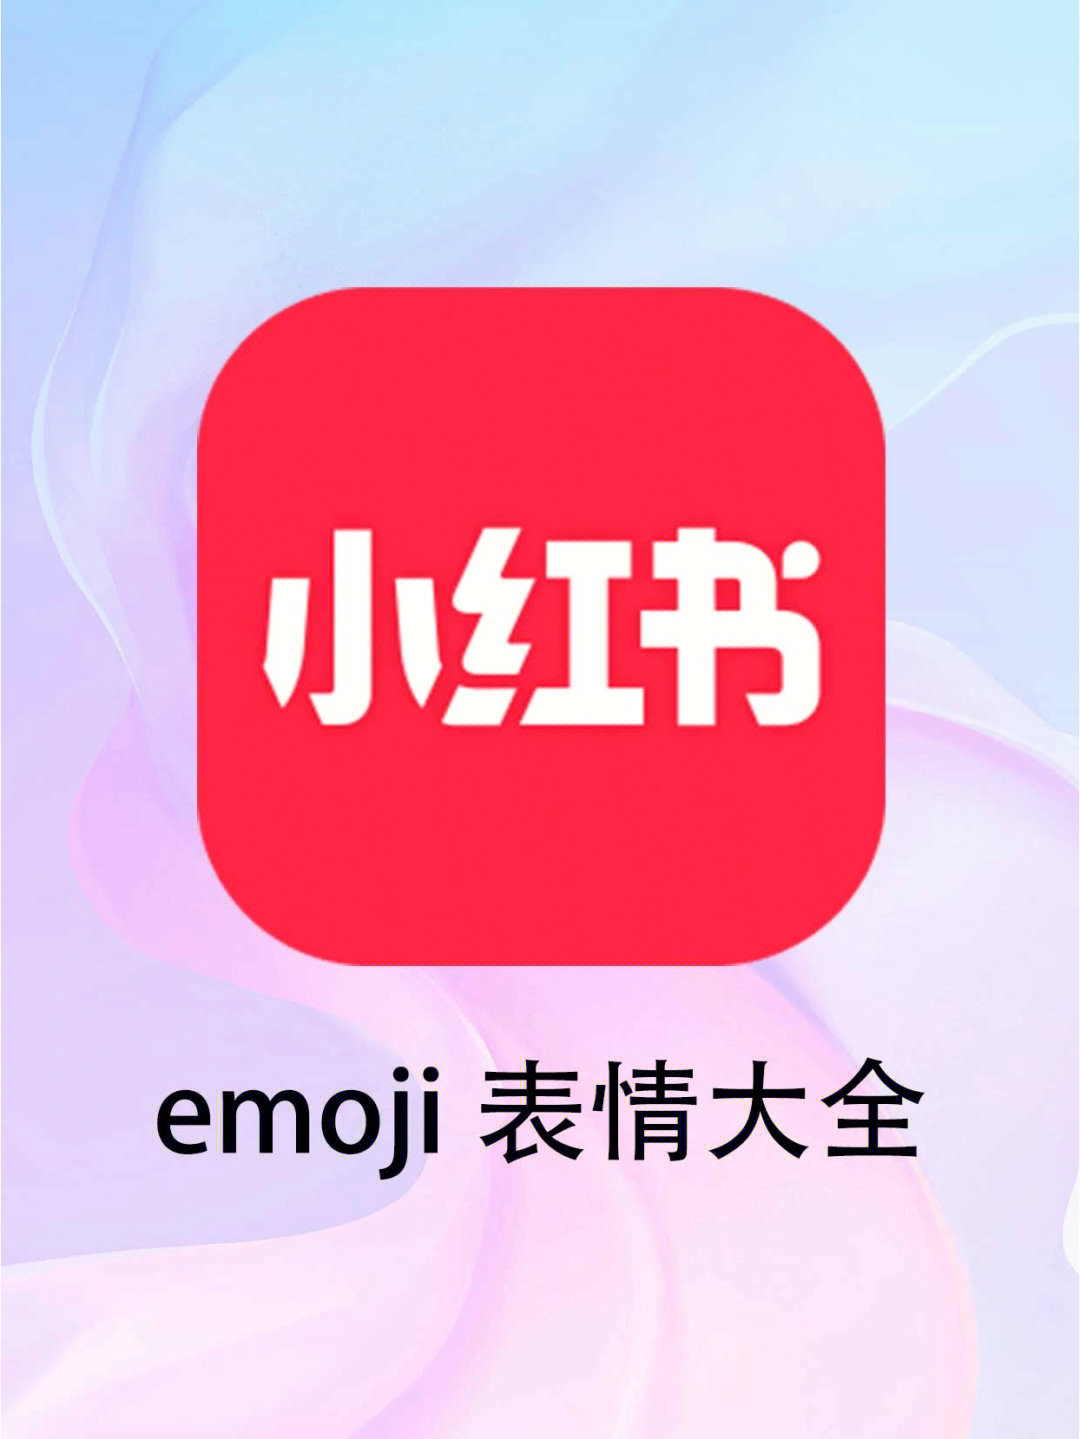 小红花表情符号emoji图片